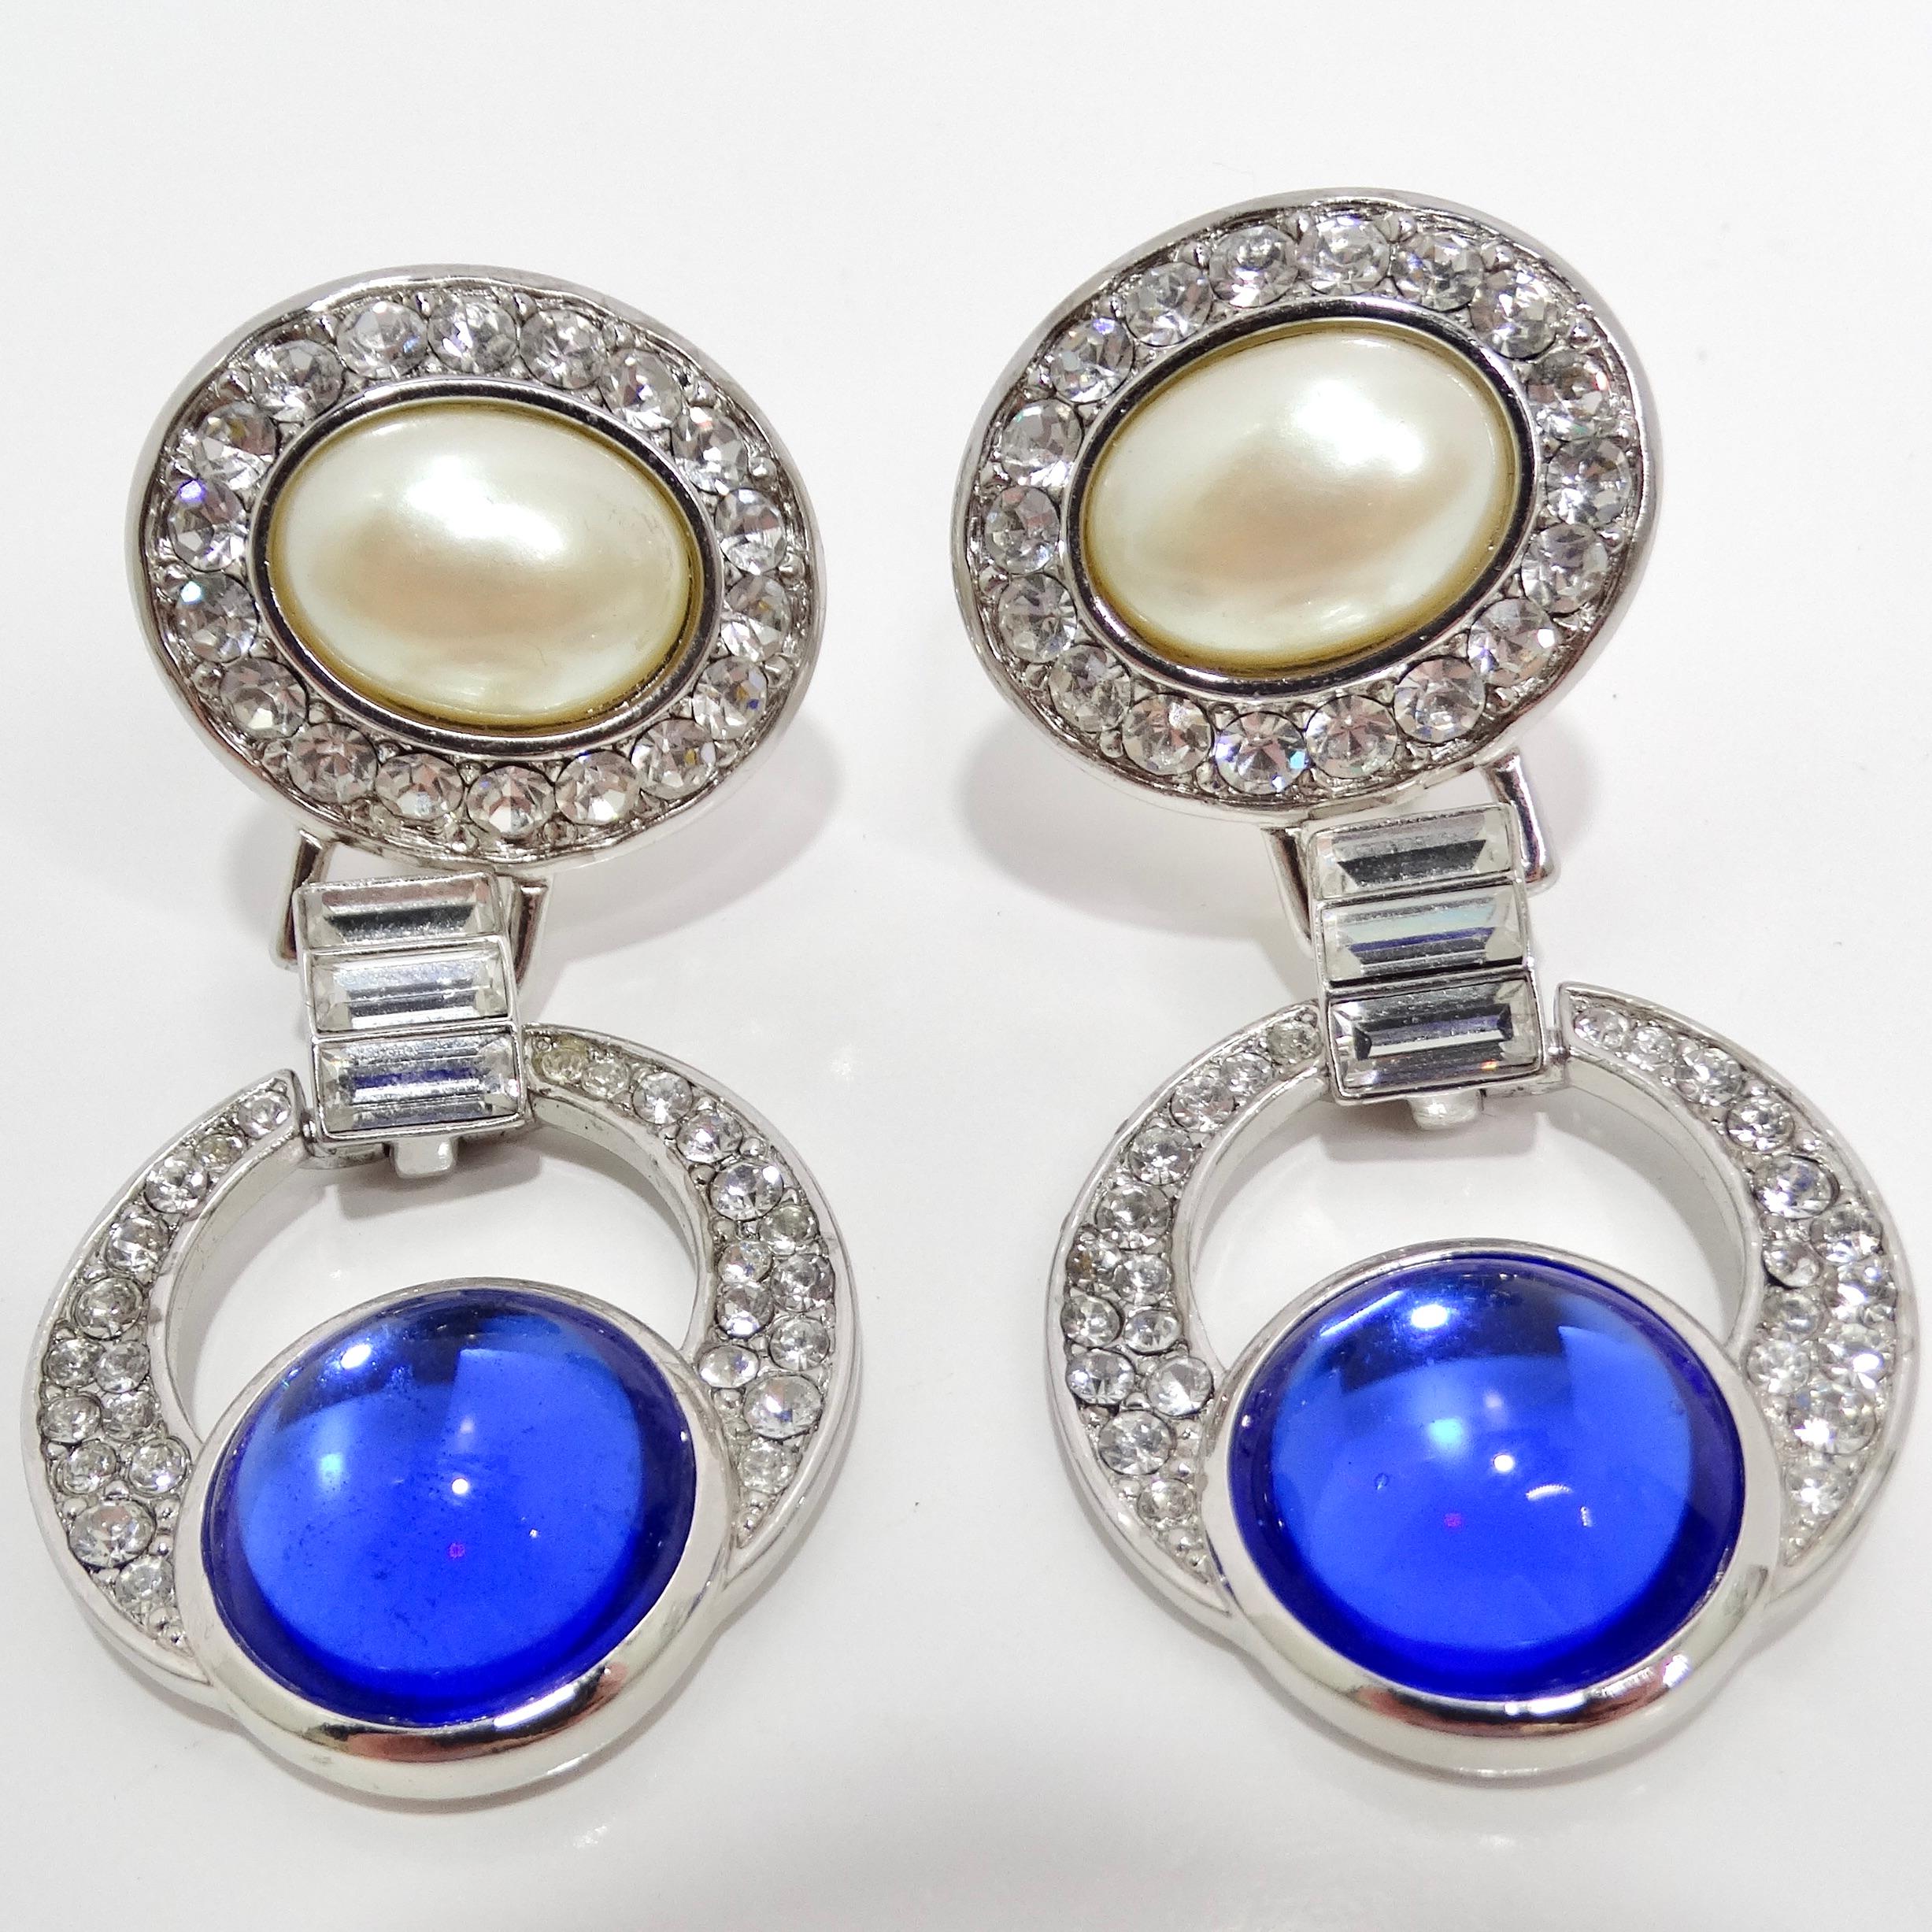 Wir präsentieren die Yves Saint Laurent 1990s Faux Sapphire Pearl Dangle Earrings, ein glamouröses und fesselndes Design, das die Opulenz und Raffinesse dieser Zeit verkörpert. Diese exquisiten Ohrringe zeichnen sich durch eine mehrdimensionale